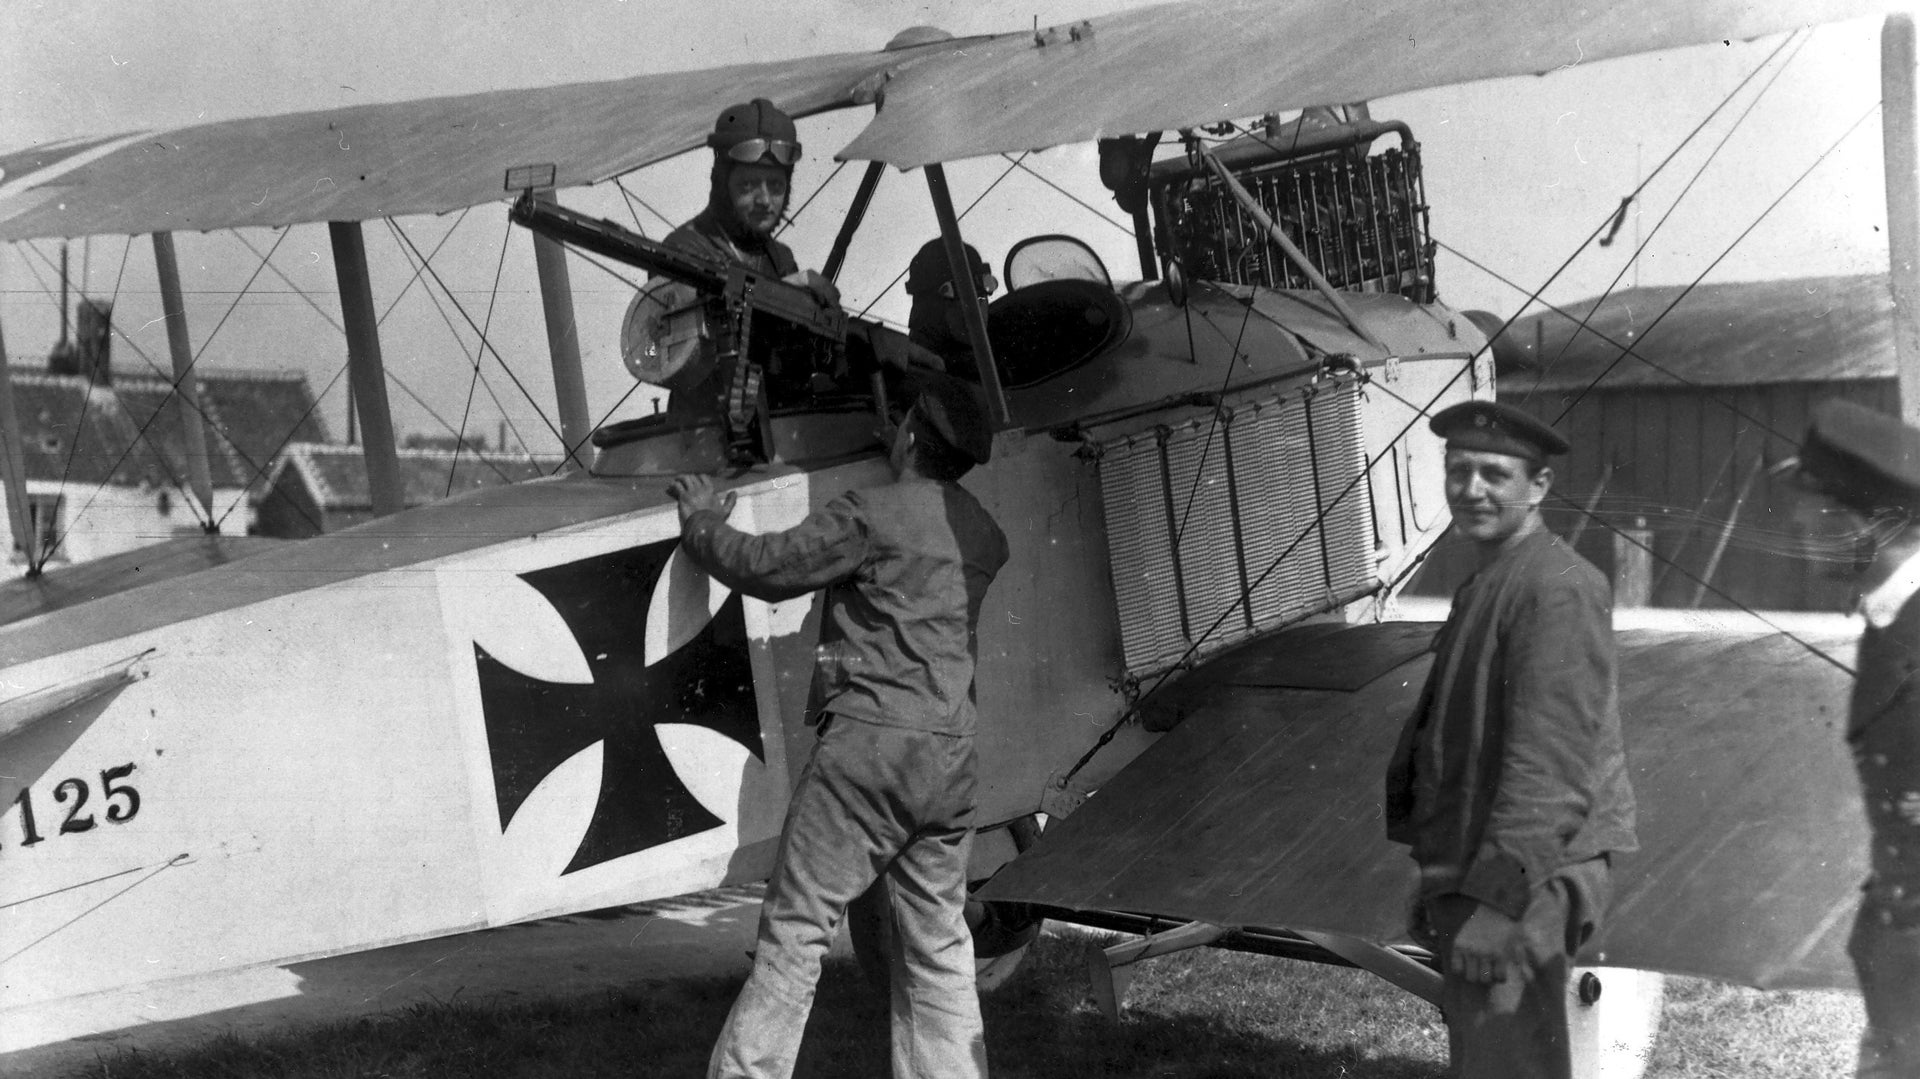 Primul Razboi Mondial: un avion de recunoastere/de lupta cu doua locuri, ilustrat pe un aerodrom naval german, in timp ce un tragator aerian verifica mitraliera.